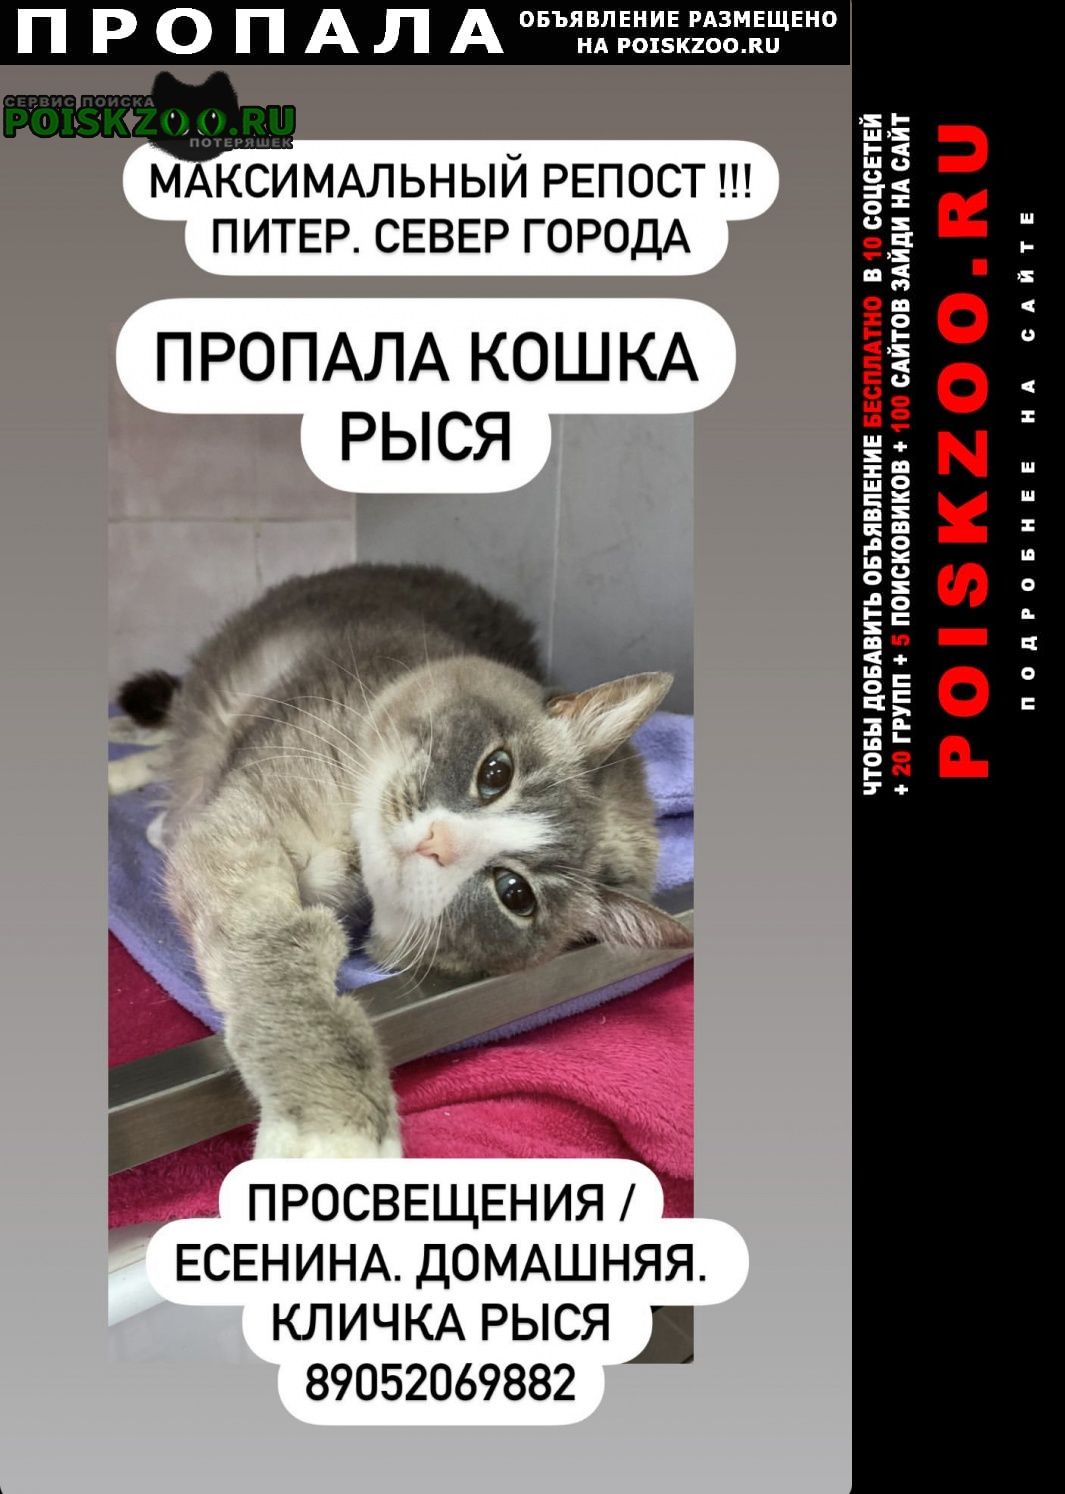 Пропала кошка рыся. вознаграждение Санкт-Петербург